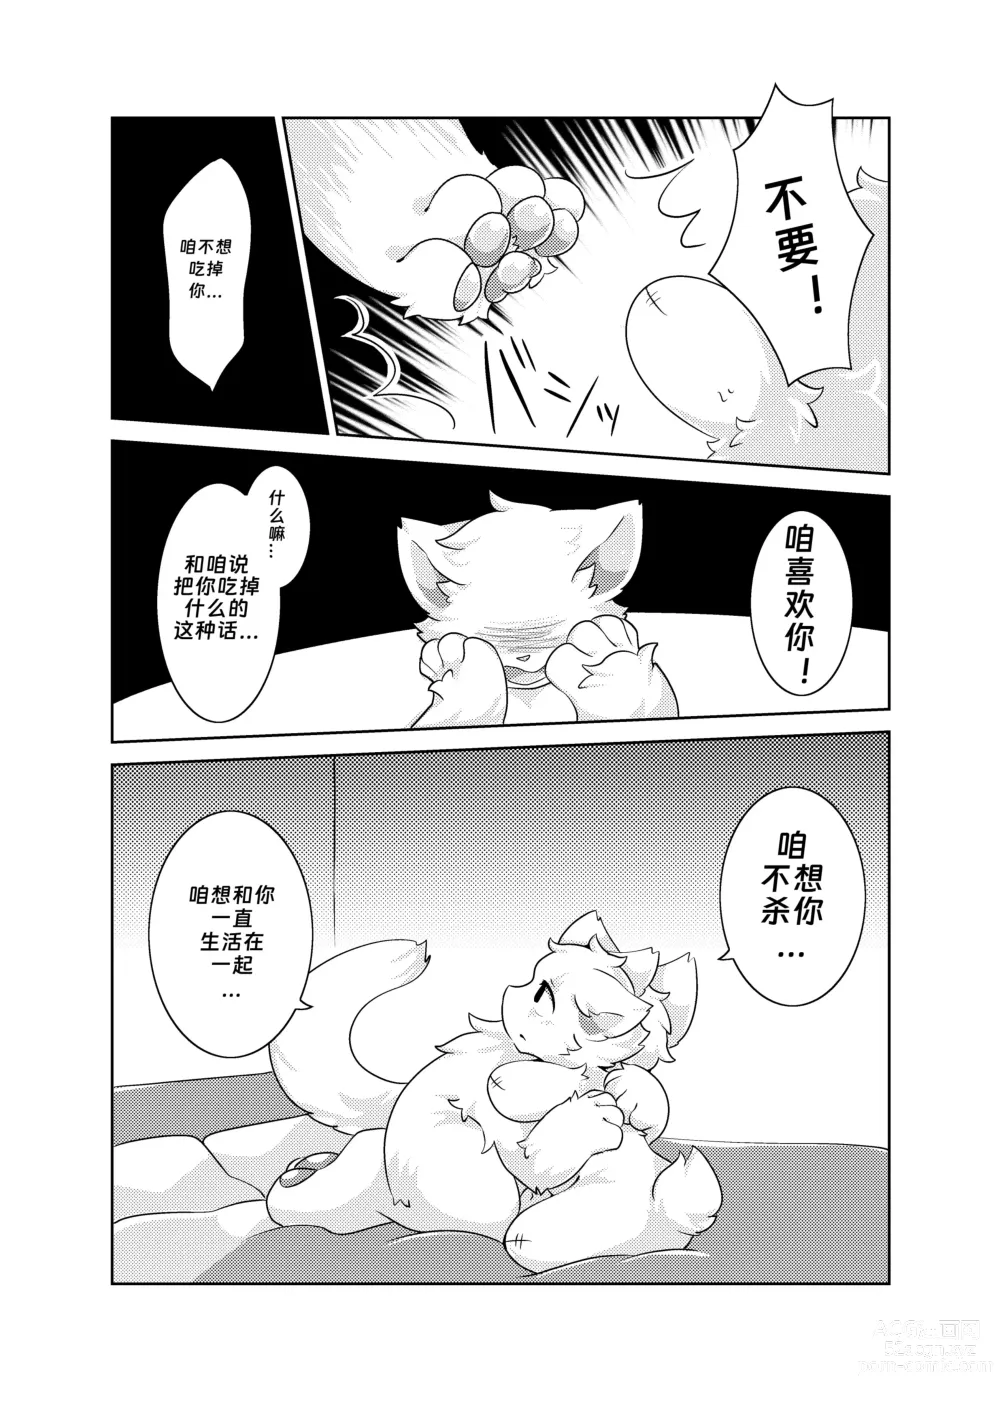 Page 13 of doujinshi Bokuyo motsuni no oishii seikatu.R-18G